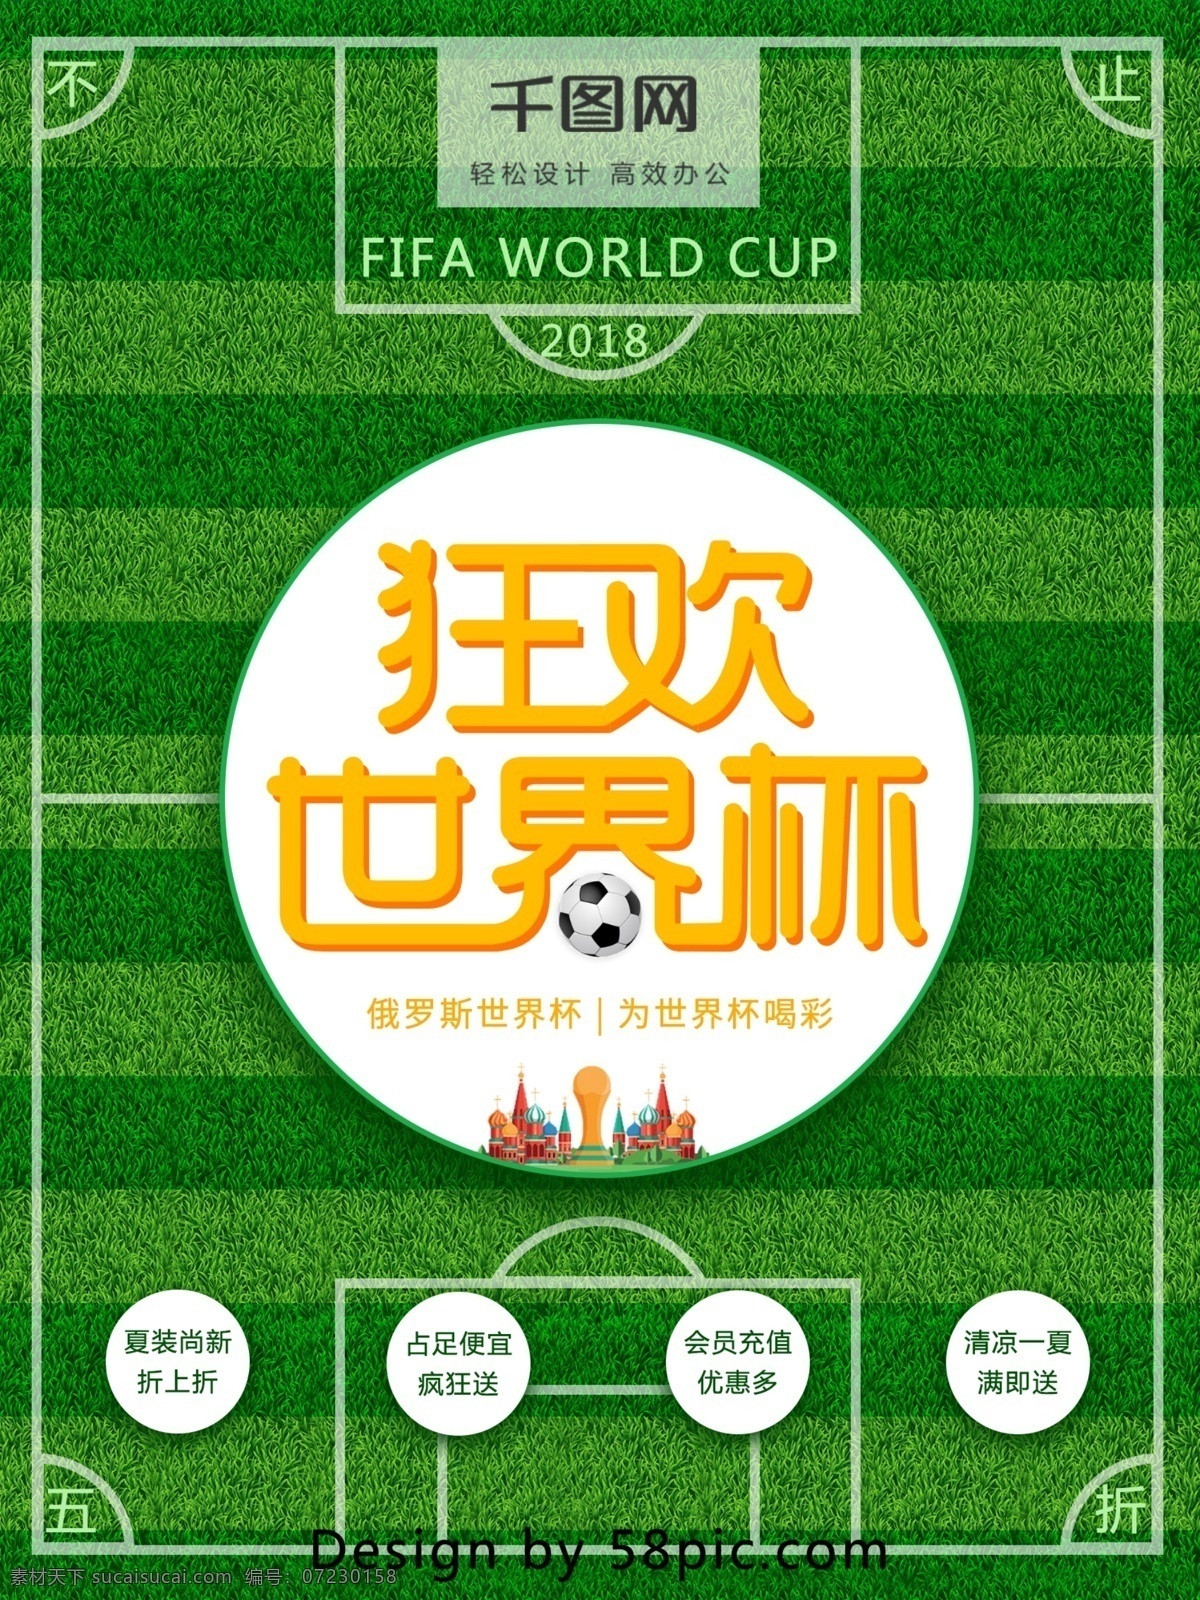 狂欢 世界杯 球场 促销 海报 足球场 绿色 足球